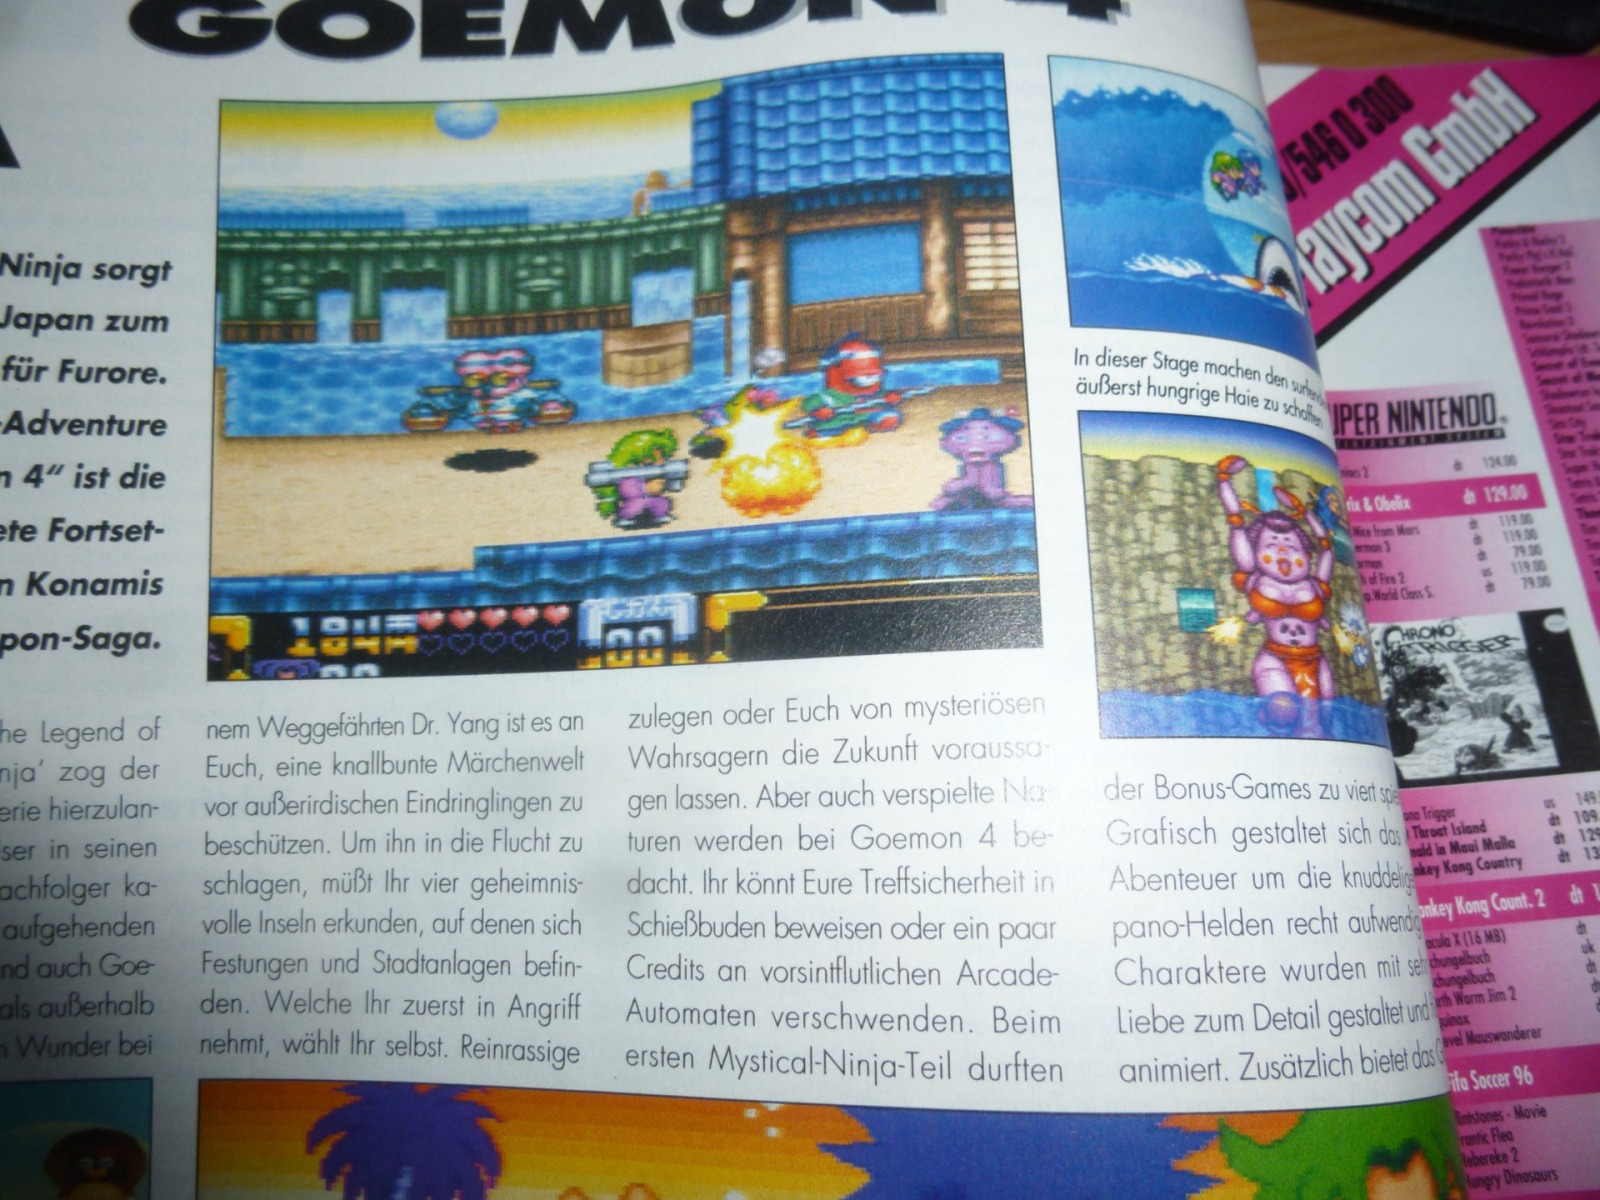 TOTAL Das unabhängige Magazin - 100 Nintendo - Ausgabe 4/96 1996 5